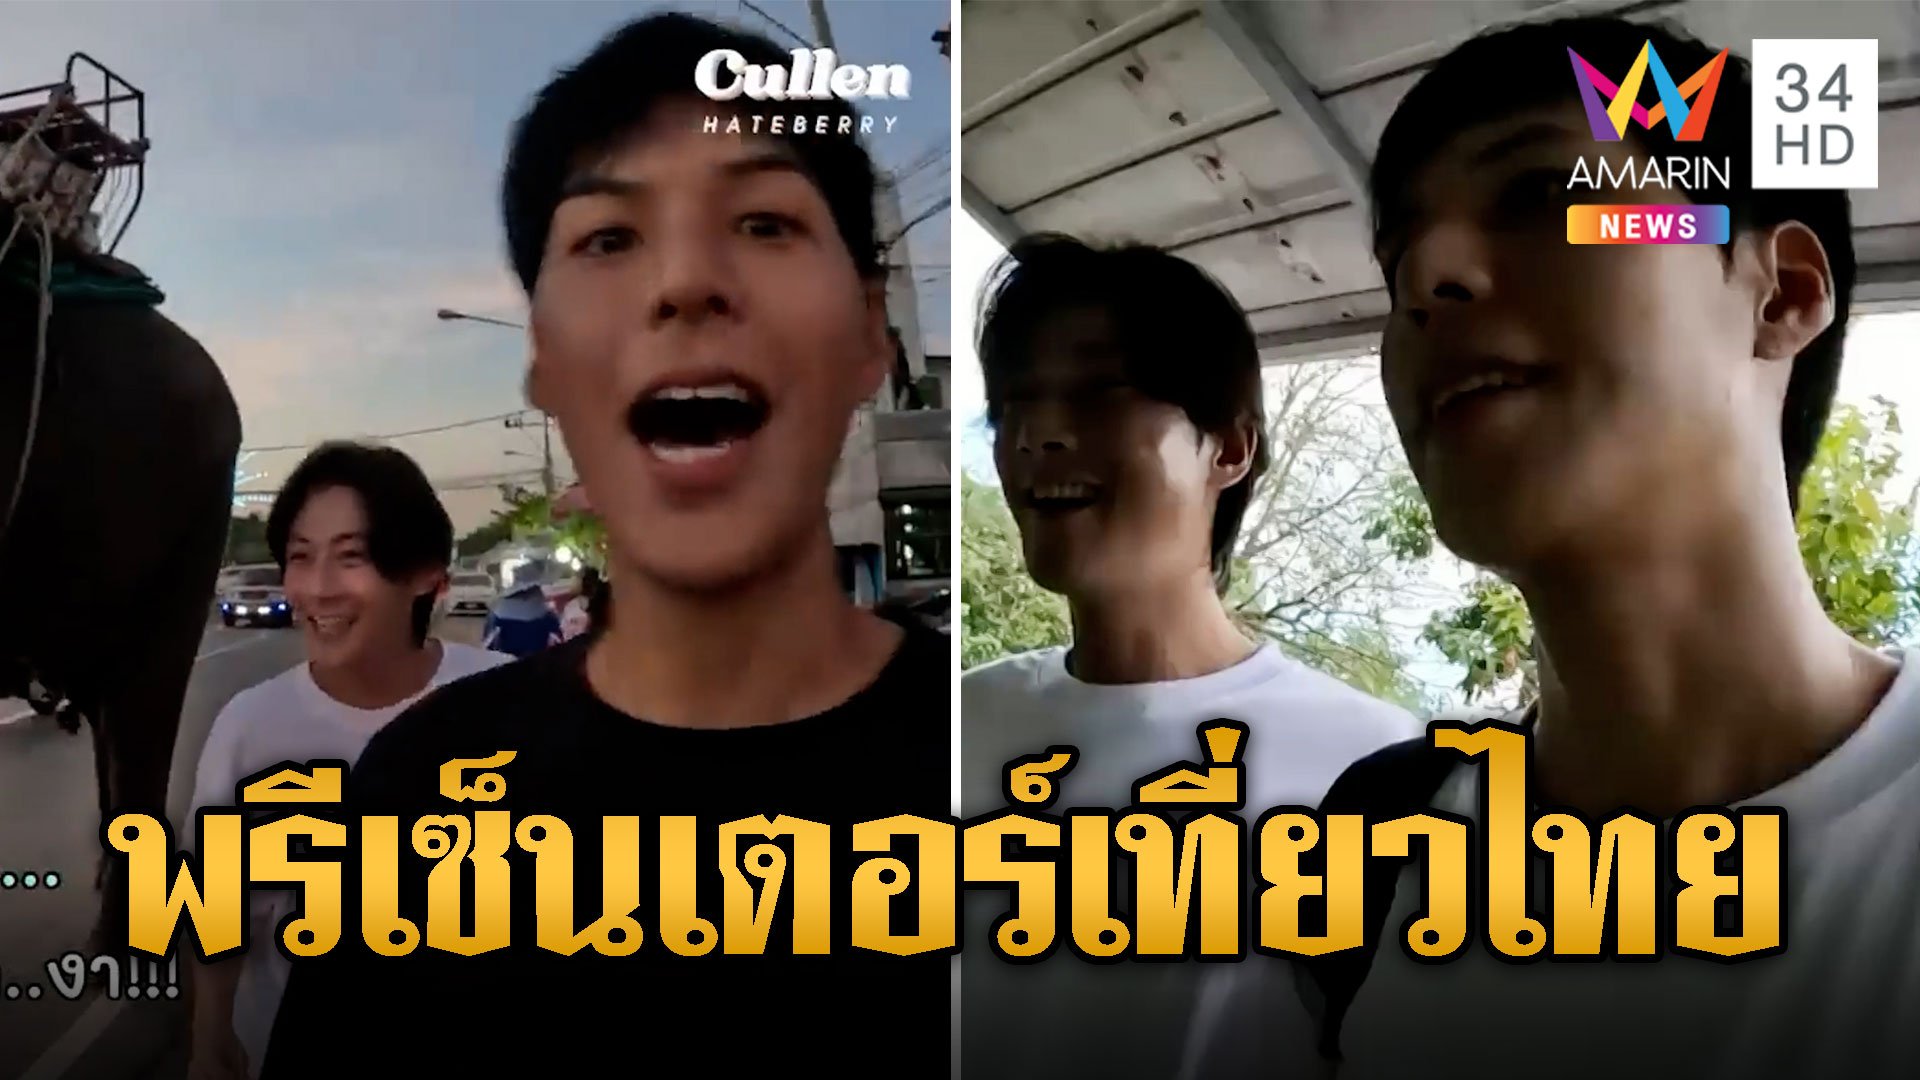 ใจฟู! อช.ดึง 2 หนุ่ม 'พี่จอง-คัลแลน' เป็นพรีเซ็นเตอร์เที่ยวไทย | ข่าวอรุณอมรินทร์ | 28 ธ.ค. 66 | AMARIN TVHD34